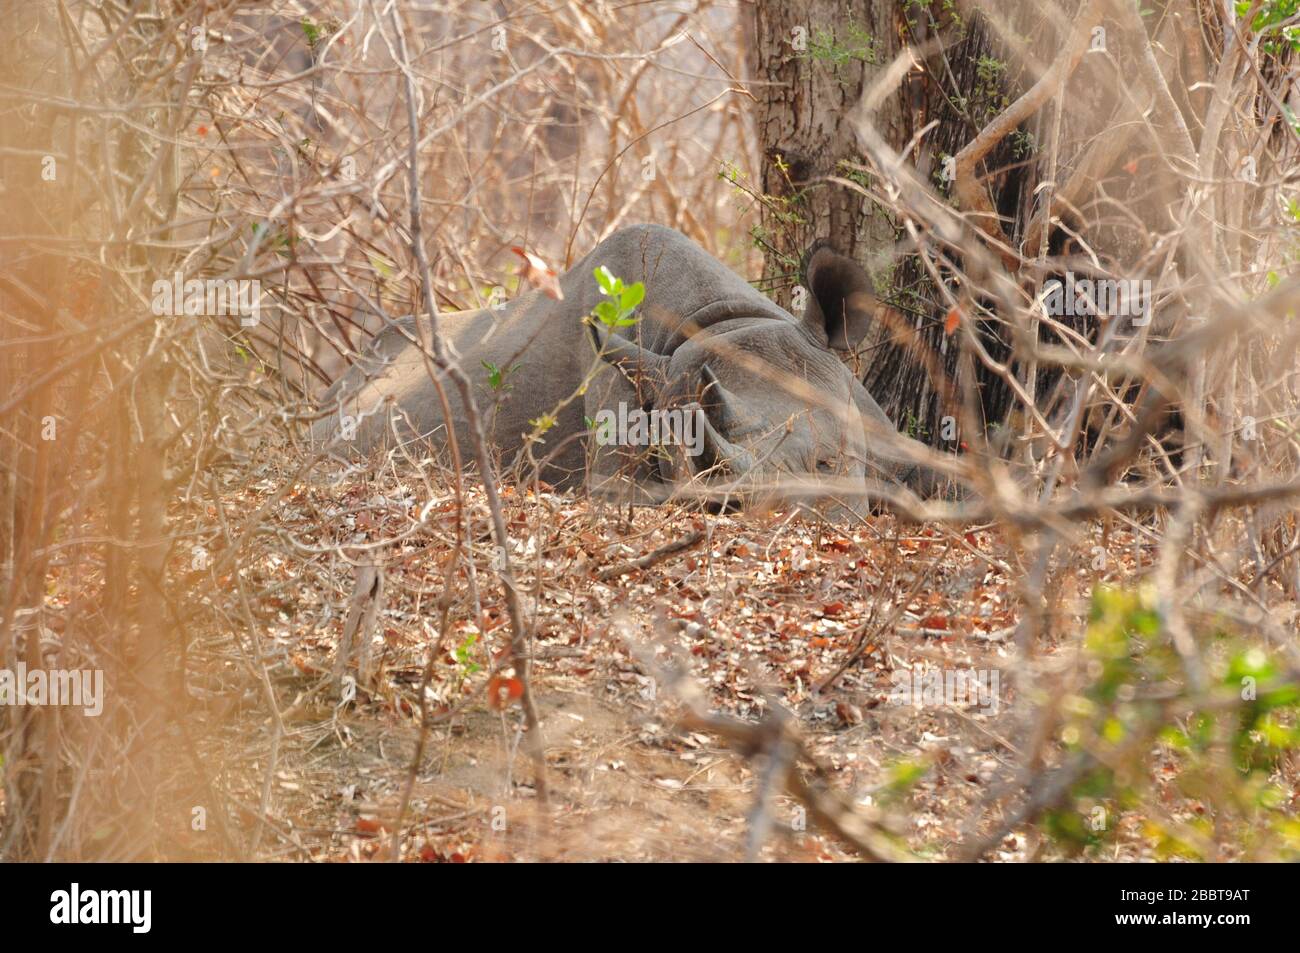 Black rhino watching from bush in dry season Stock Photo